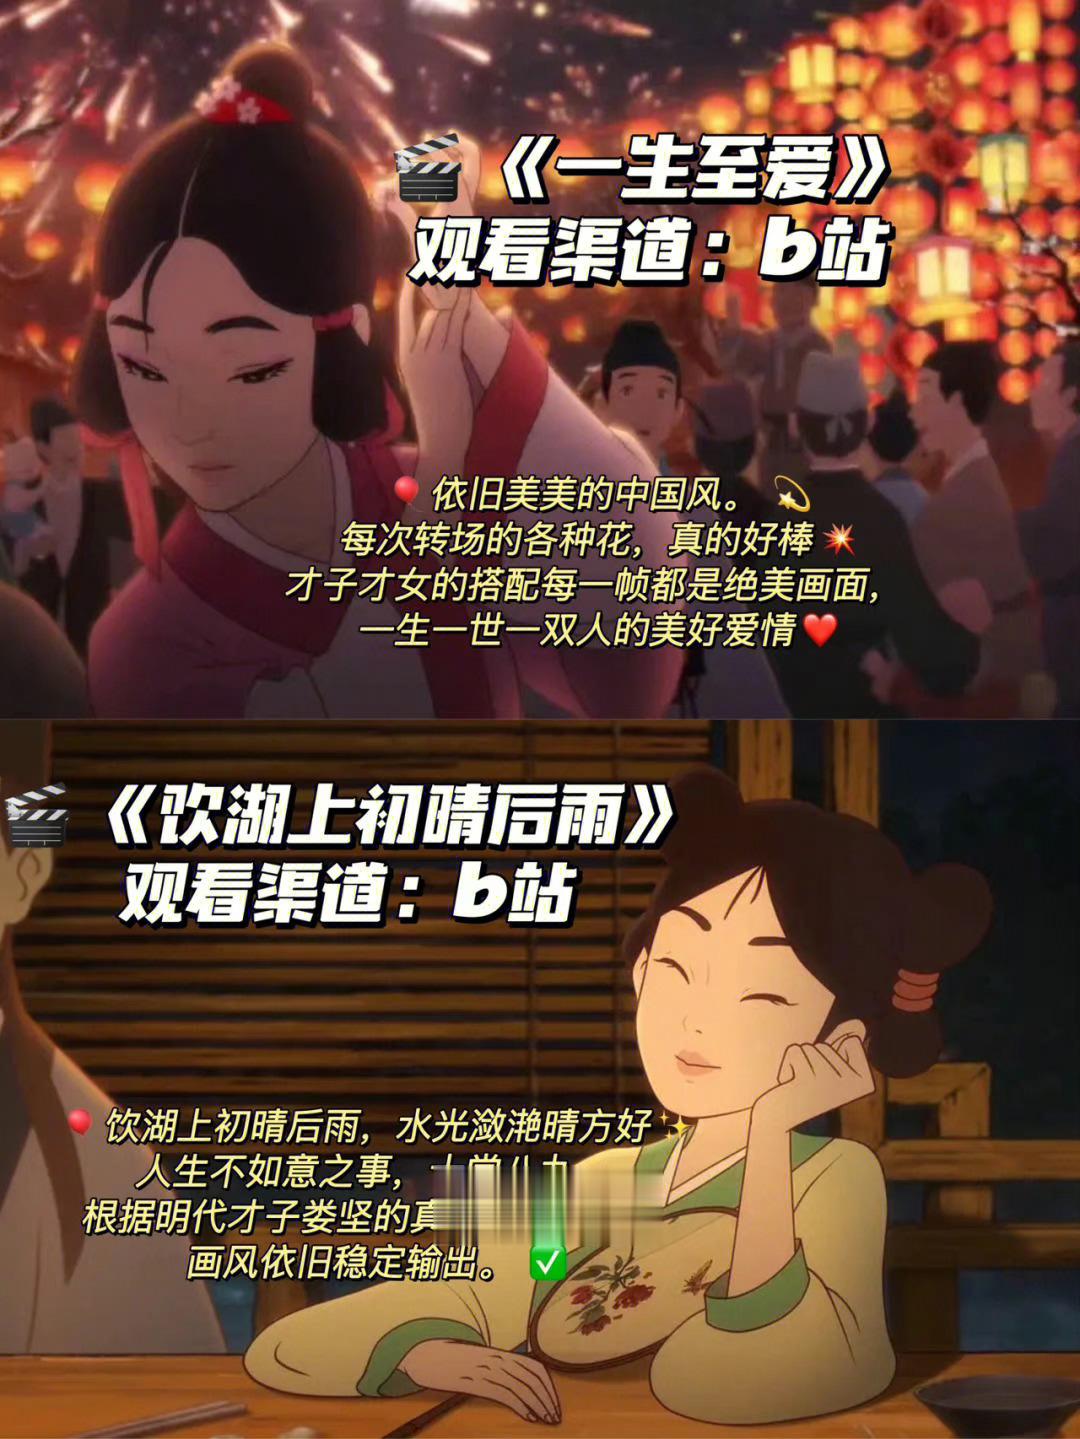 这些绝美中国风动画，无法超越的中式美学 ​​​